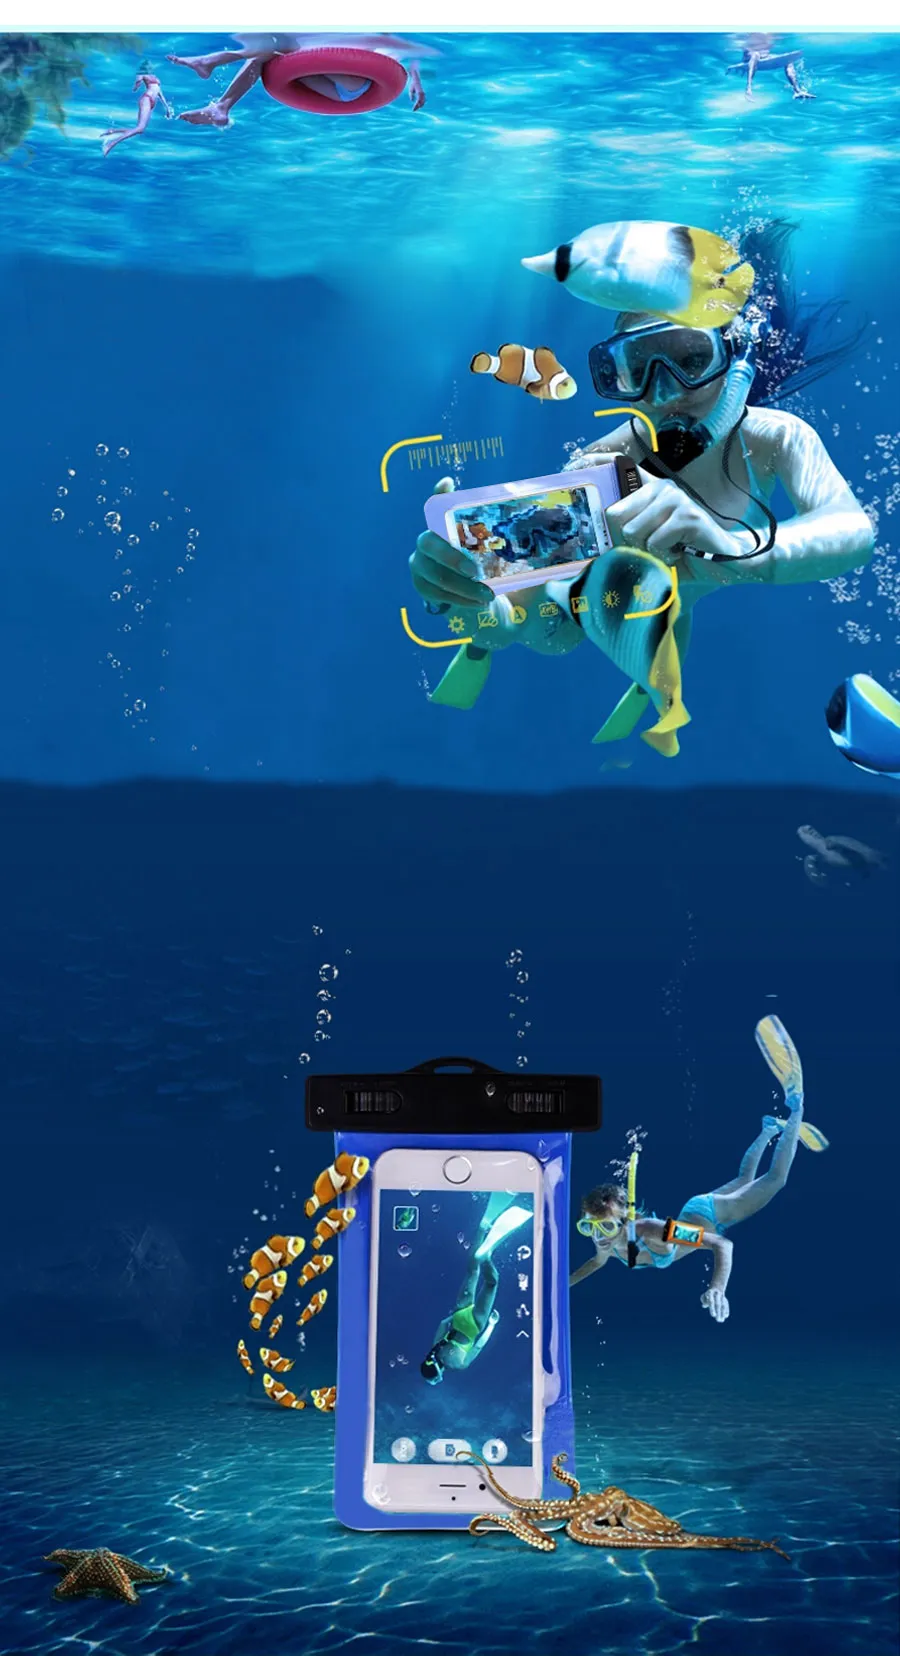 Оптовая универсальный IPX8 водонепроницаемый чехол для телефона Samsung S8 S6 S7 Edge J5 телефон сумка сухой мешок мешок клип для всех ясно водонепроницаемый мешок